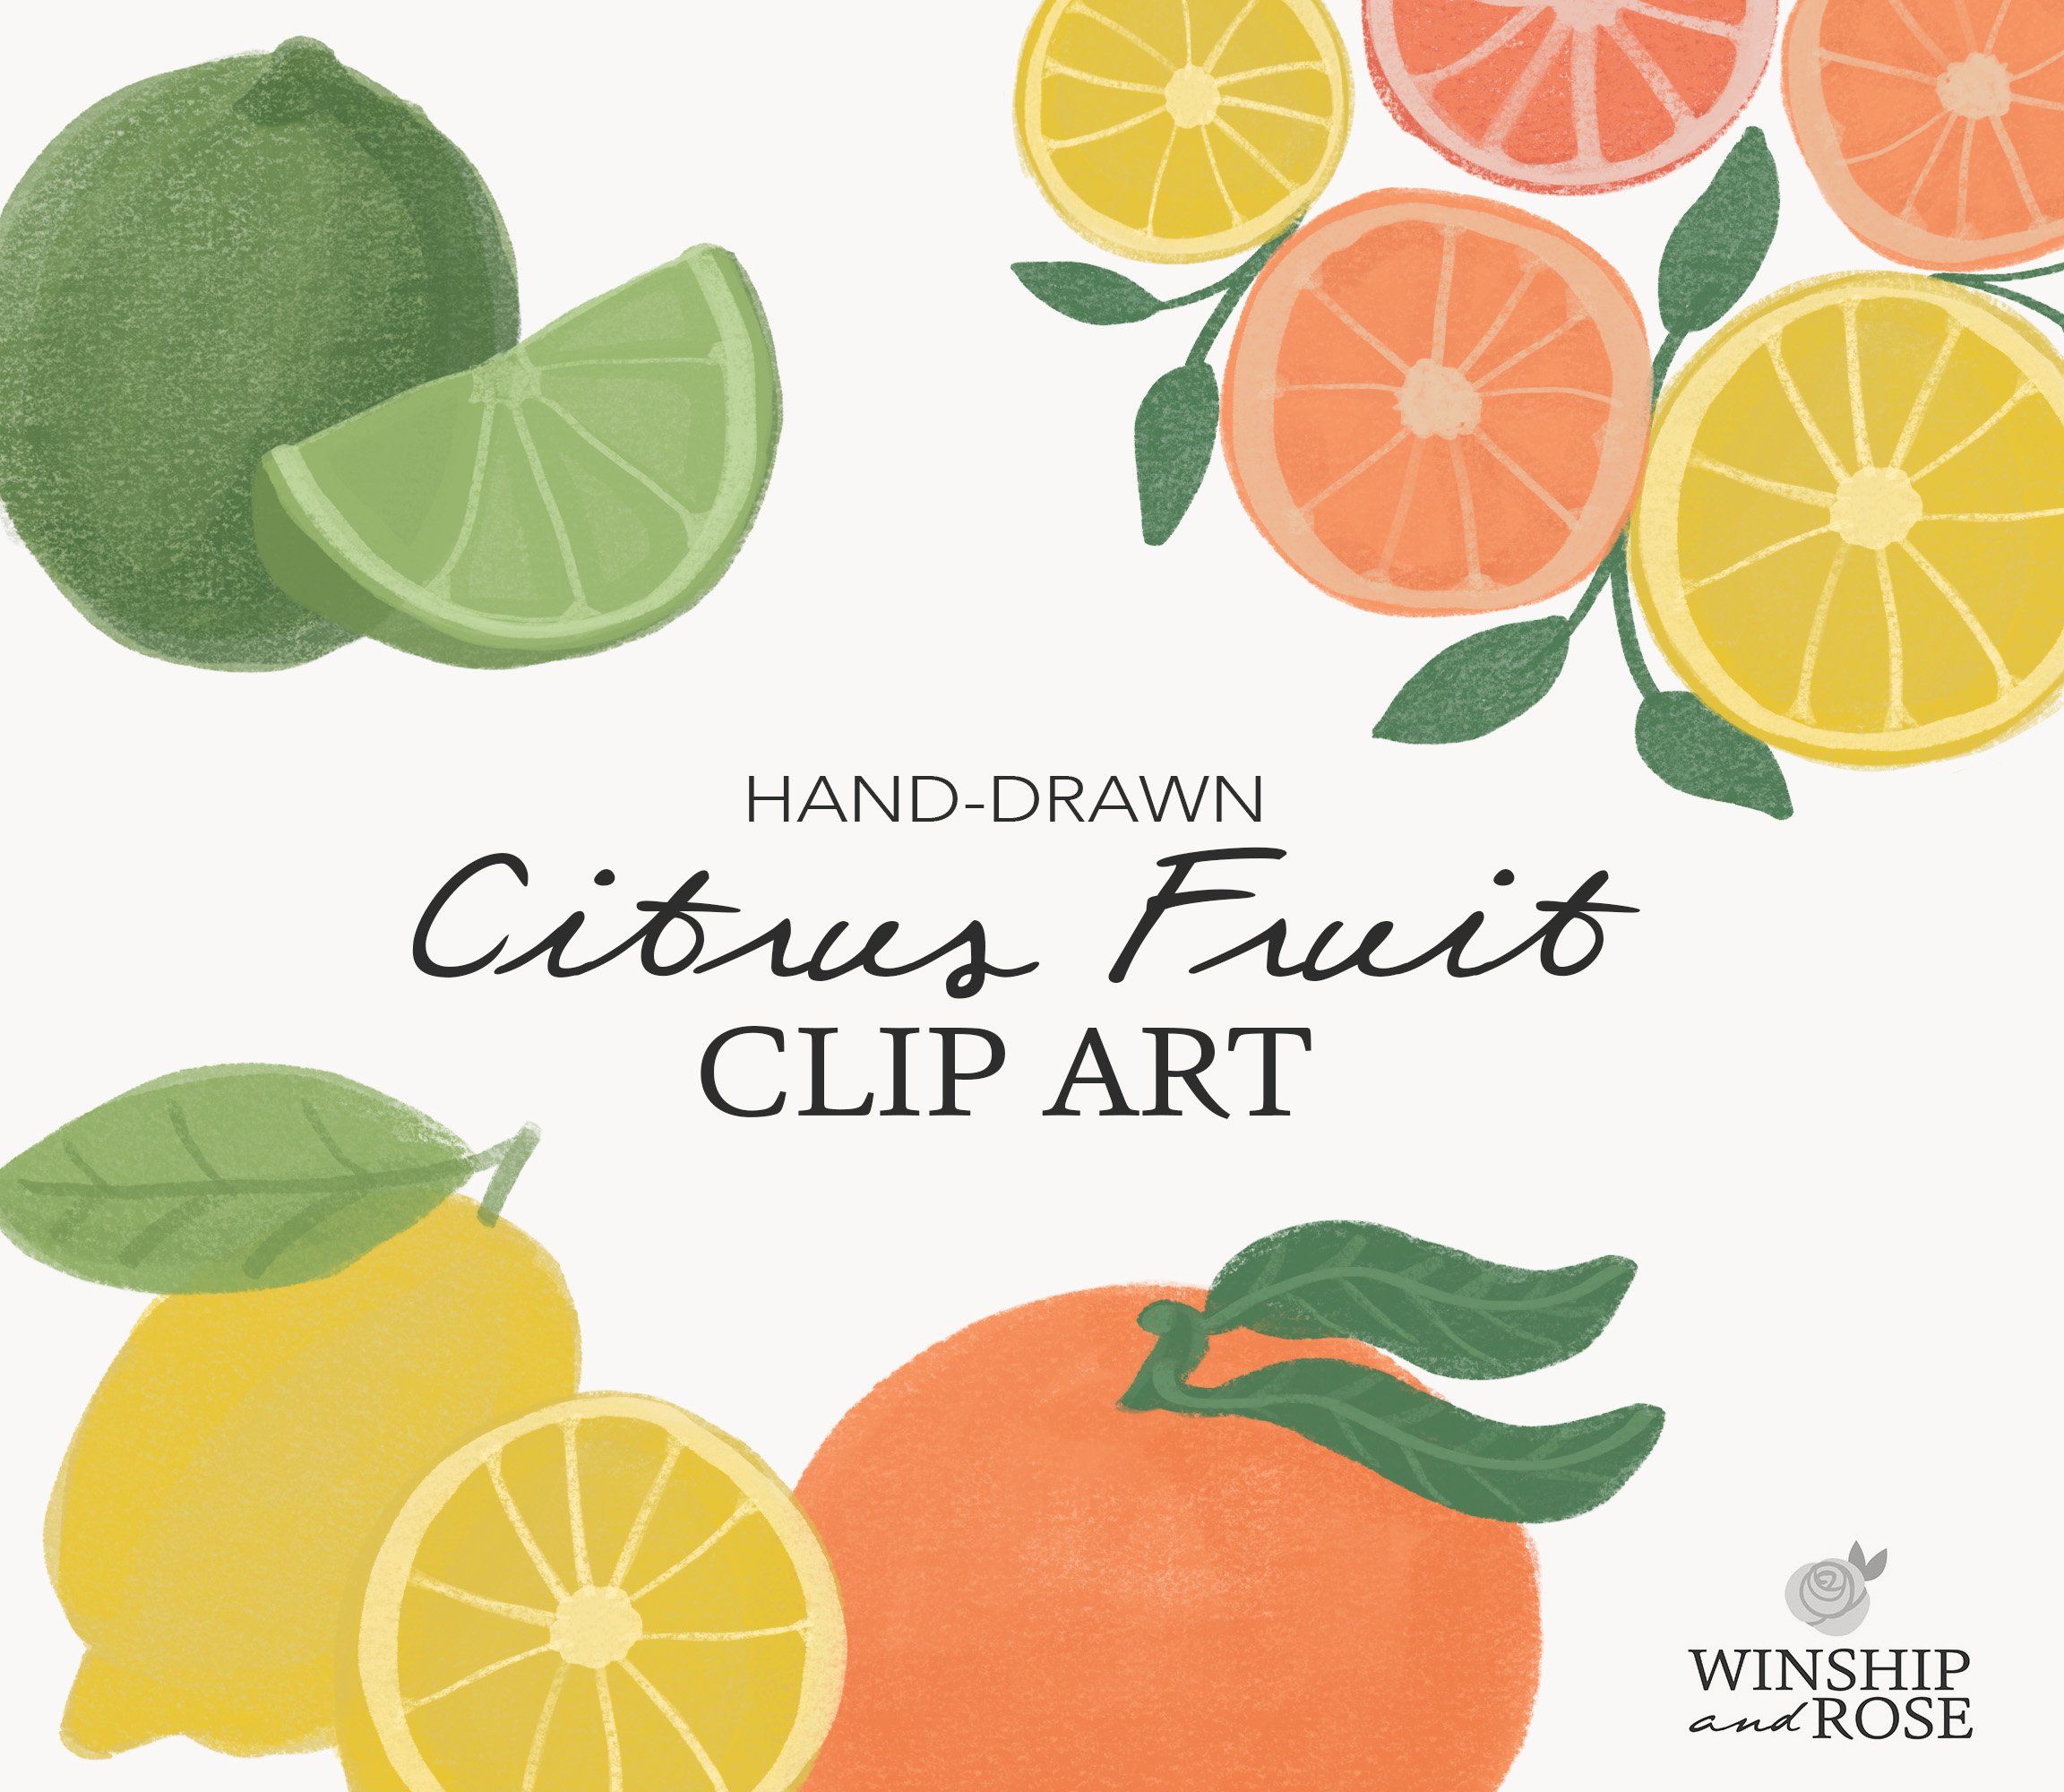 Citrus Fruit Clip Art, Orange, Lemon cover image.